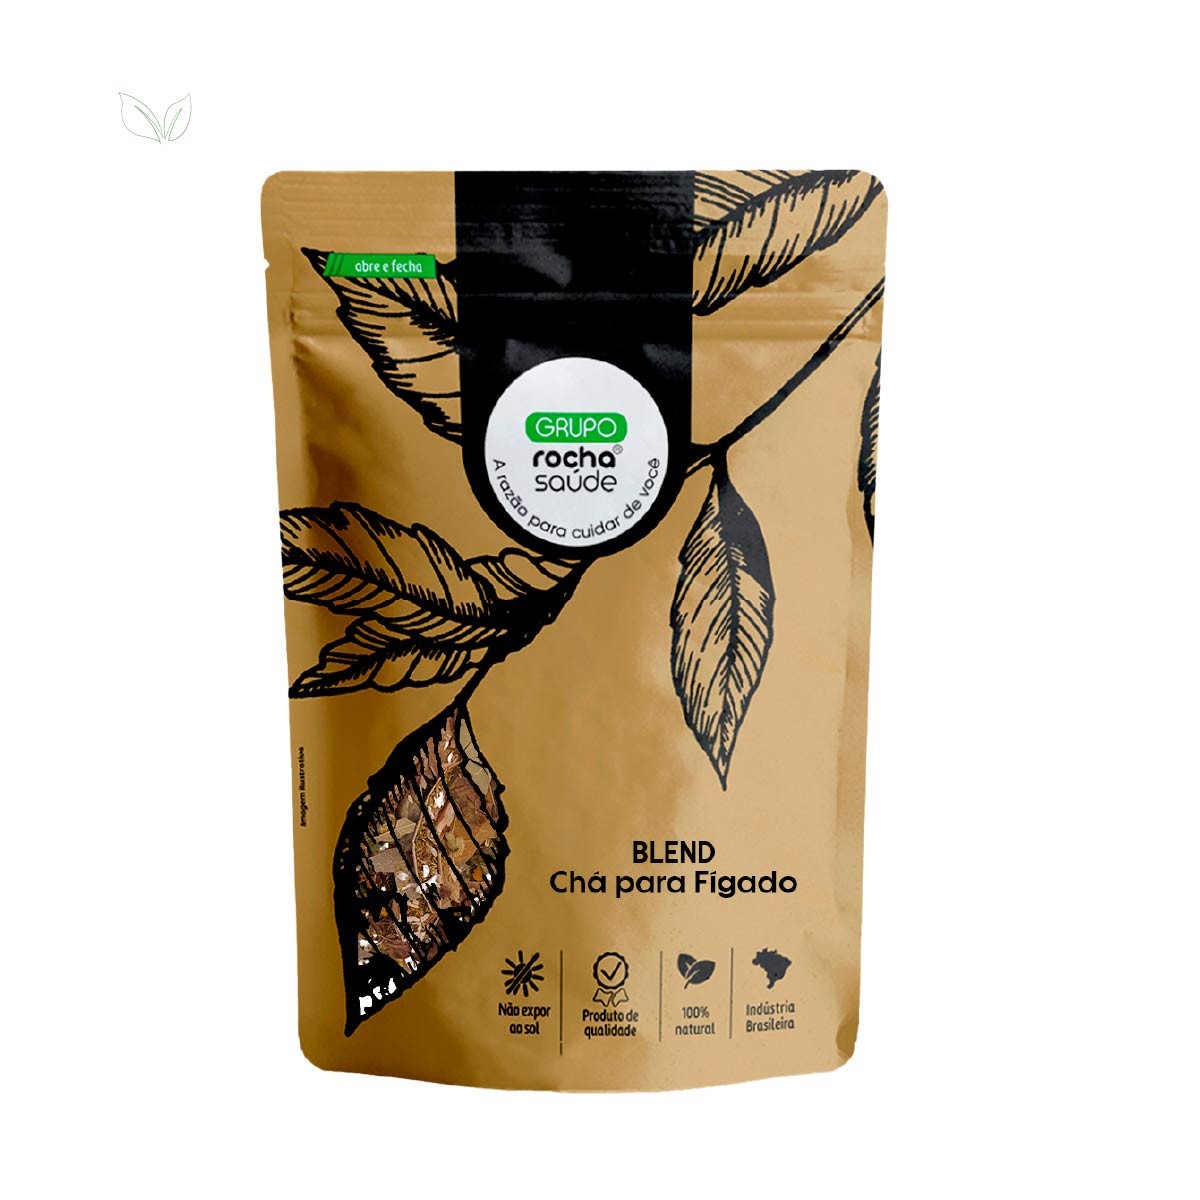 Blend – Chá para Fígado - 100% Natural - Alta Qualidade